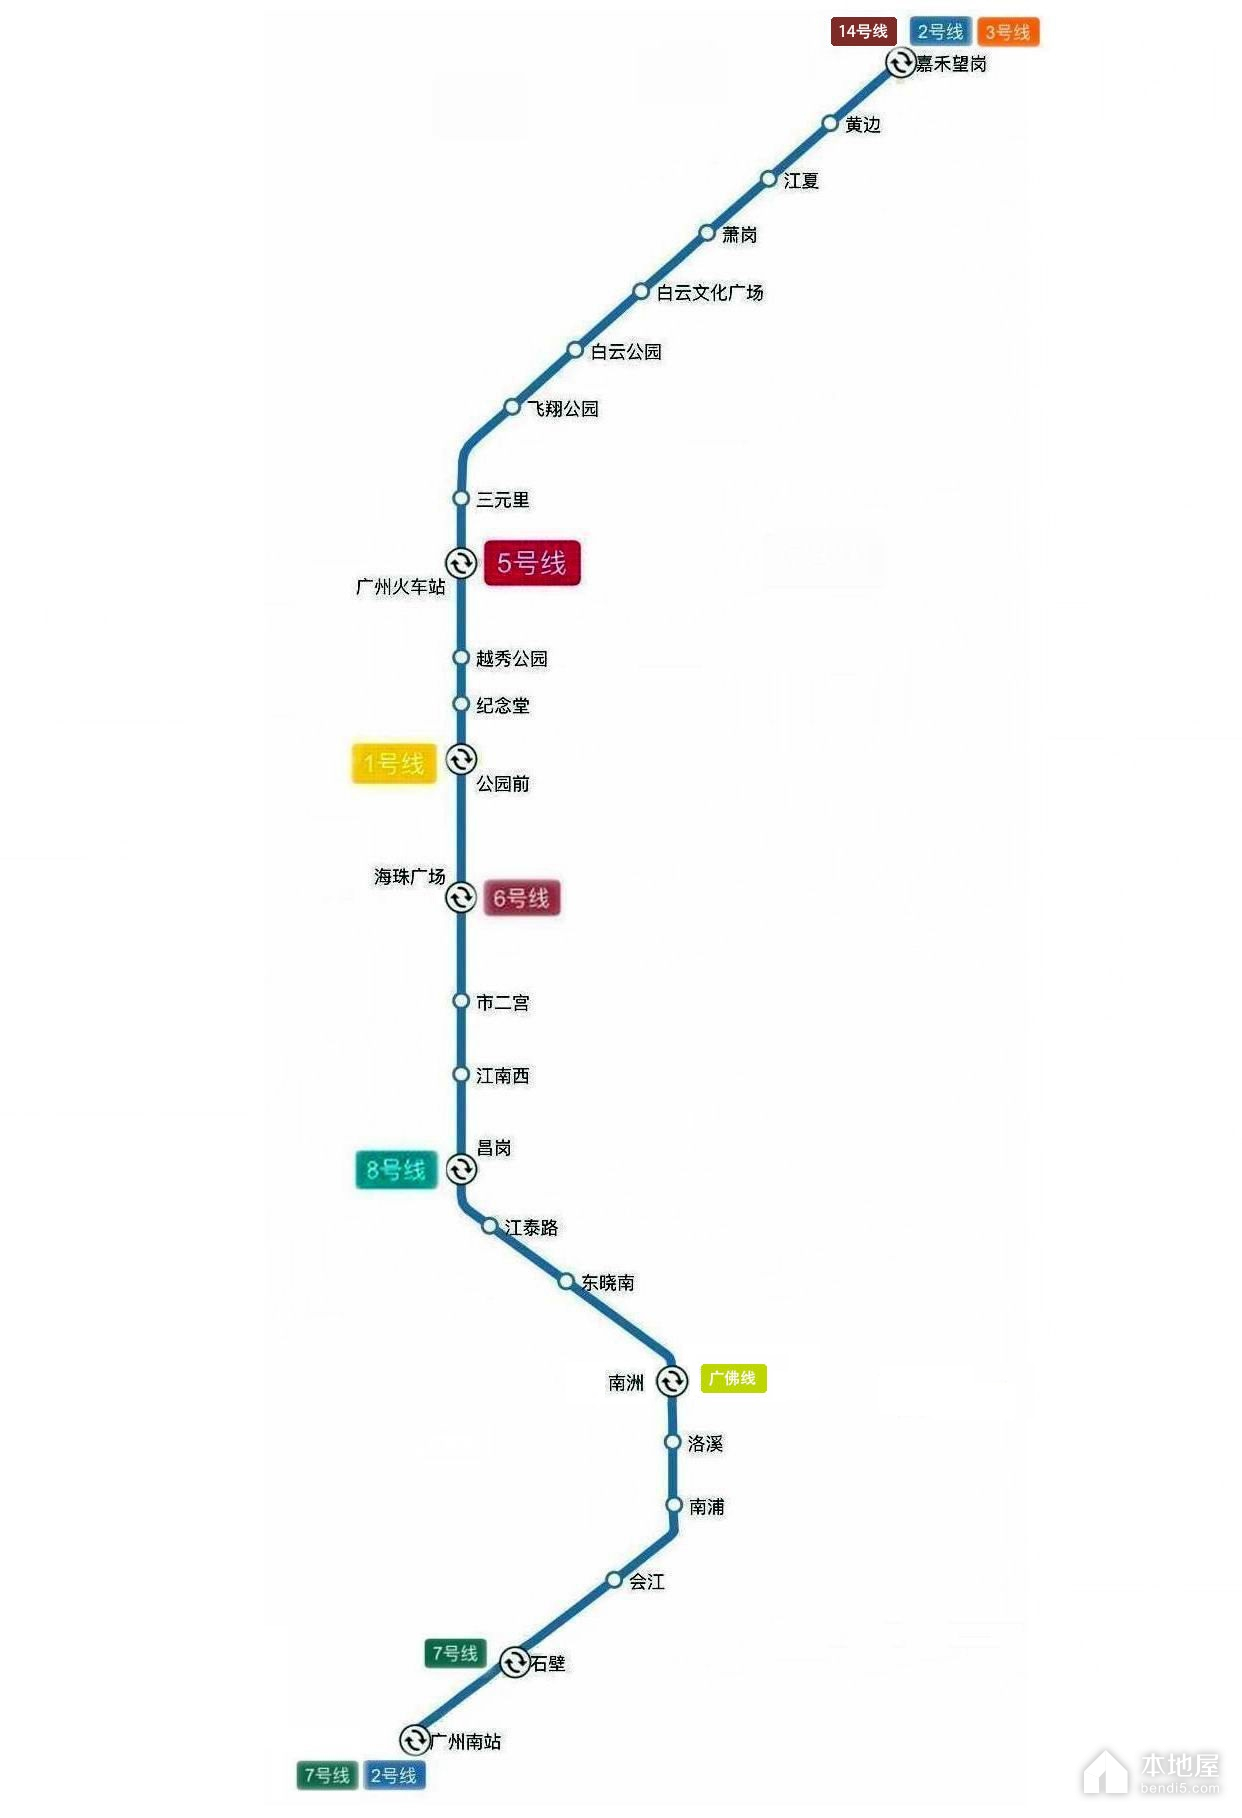 廣州地鐵2號線路線圖